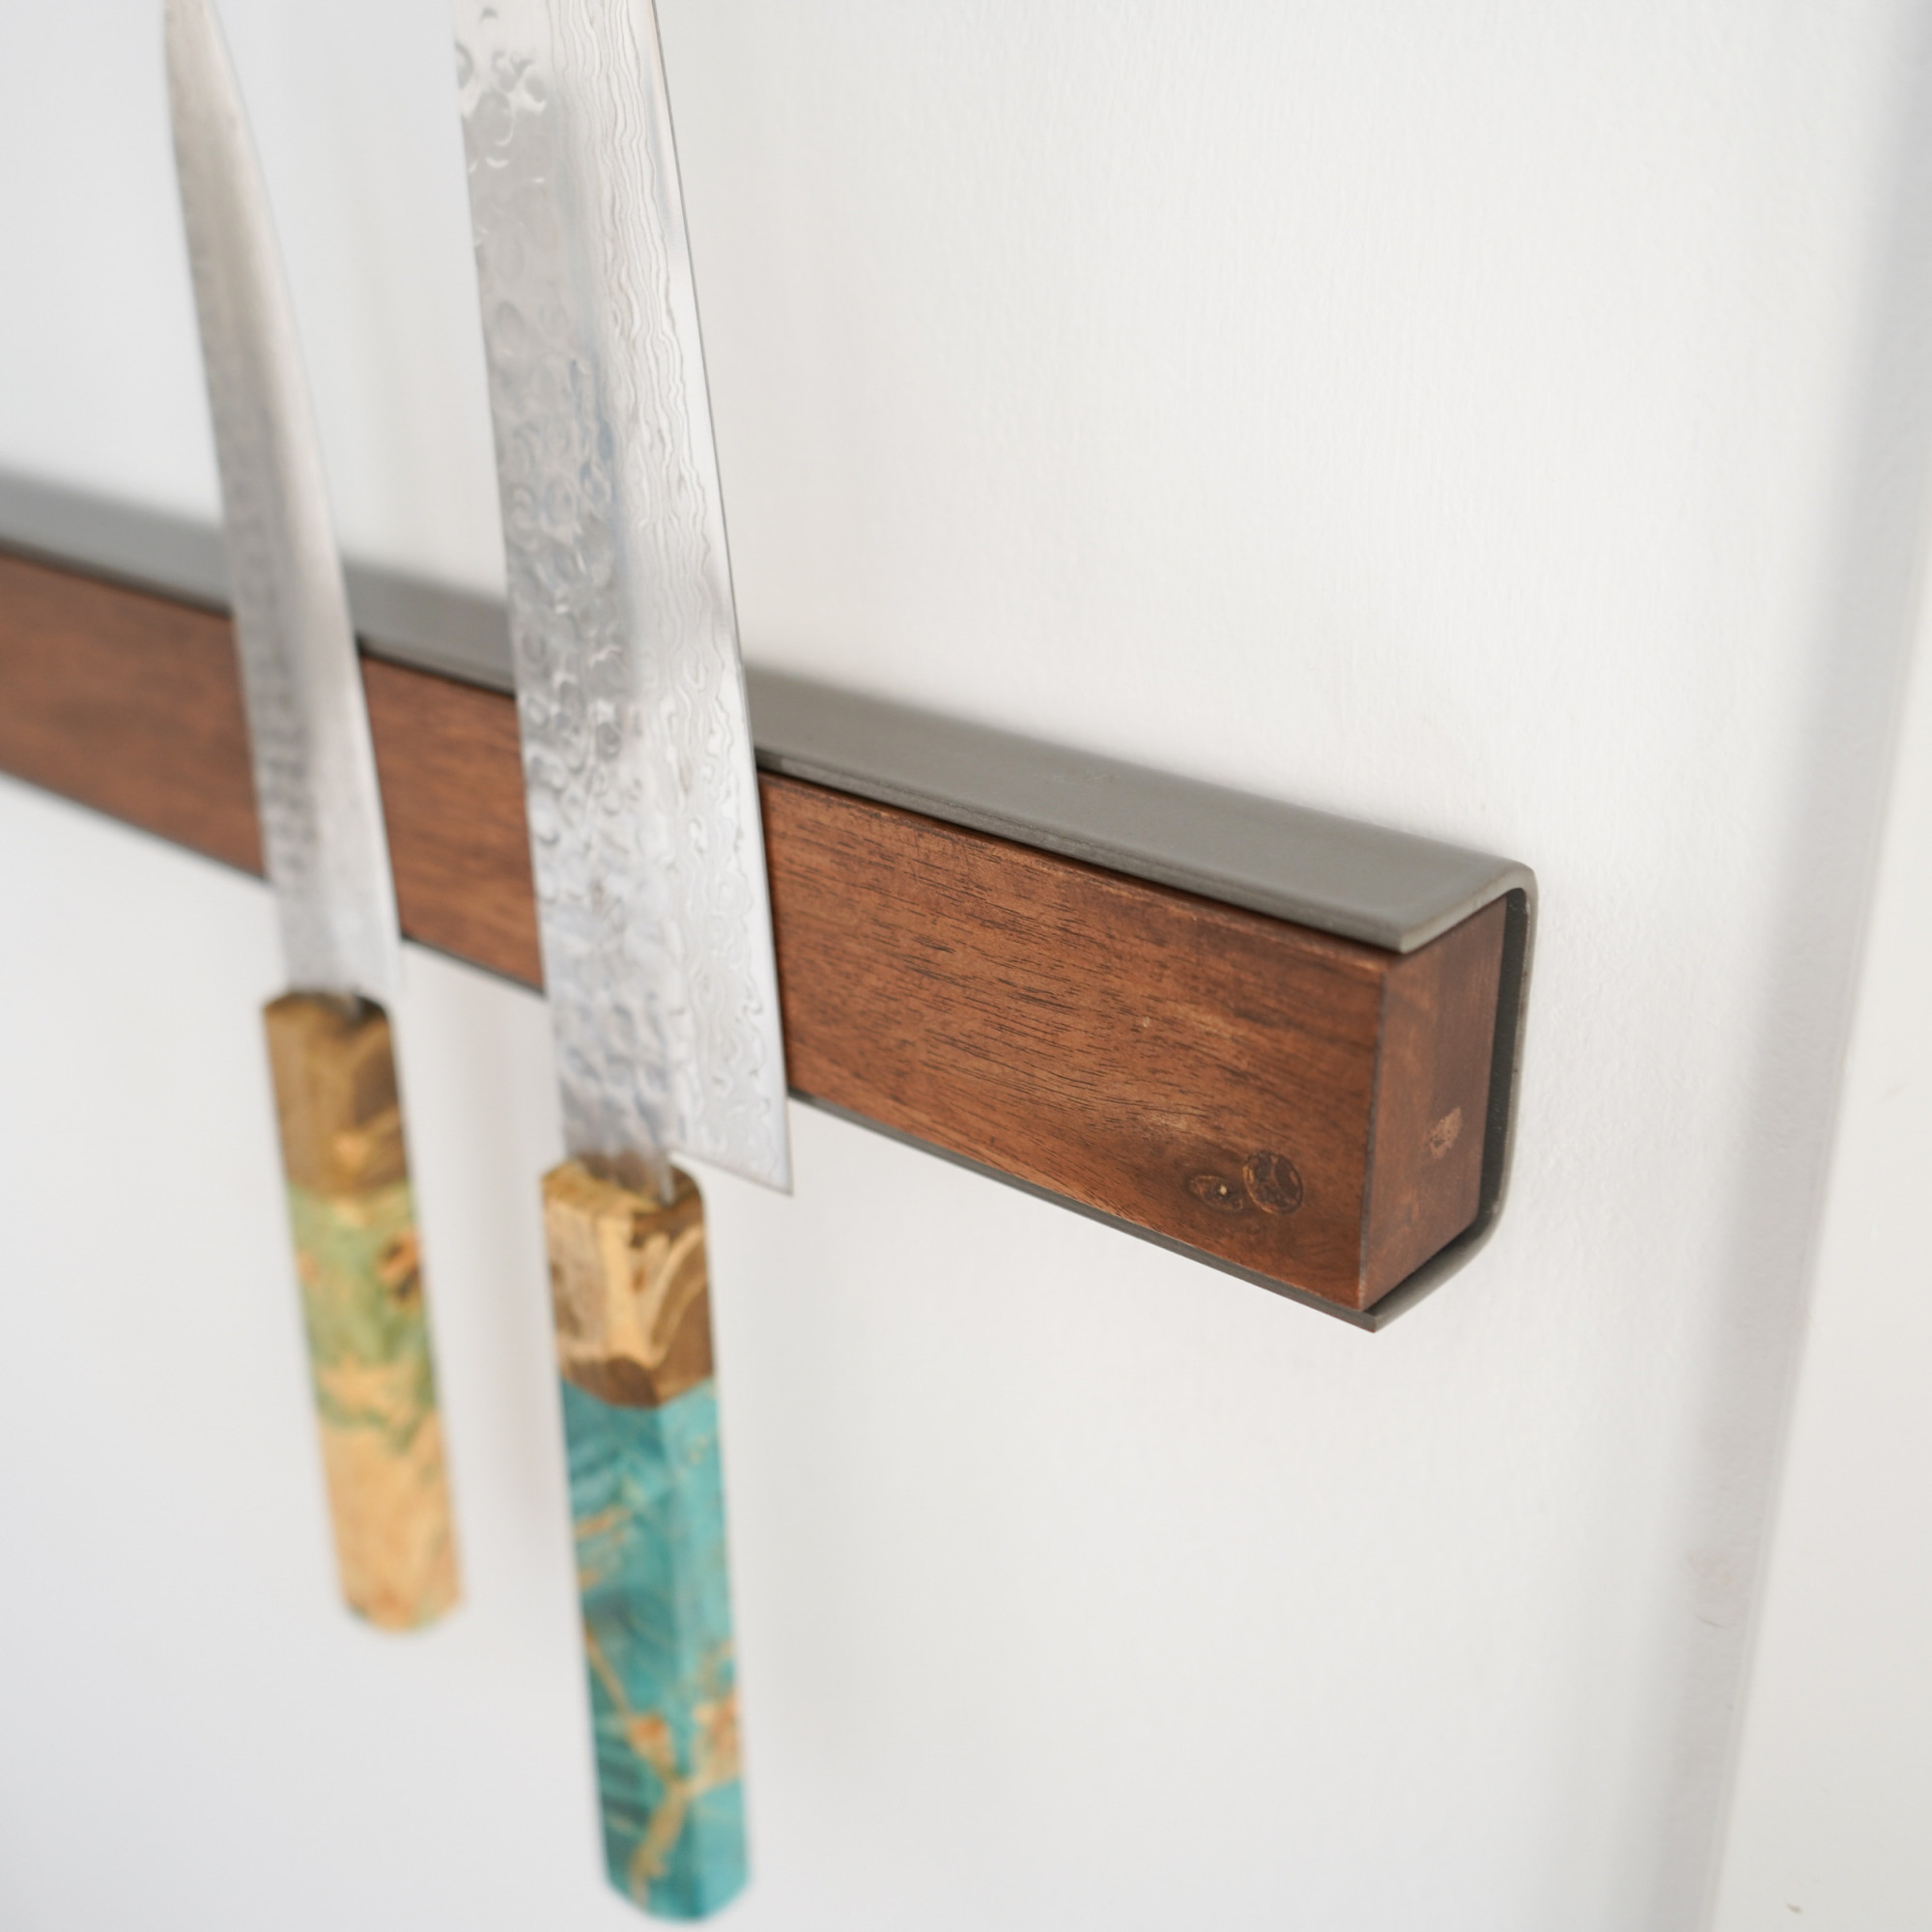 Magnetischer Holz-Messerständer für die Wandmontage - Walnuss-Stahlmesser 4